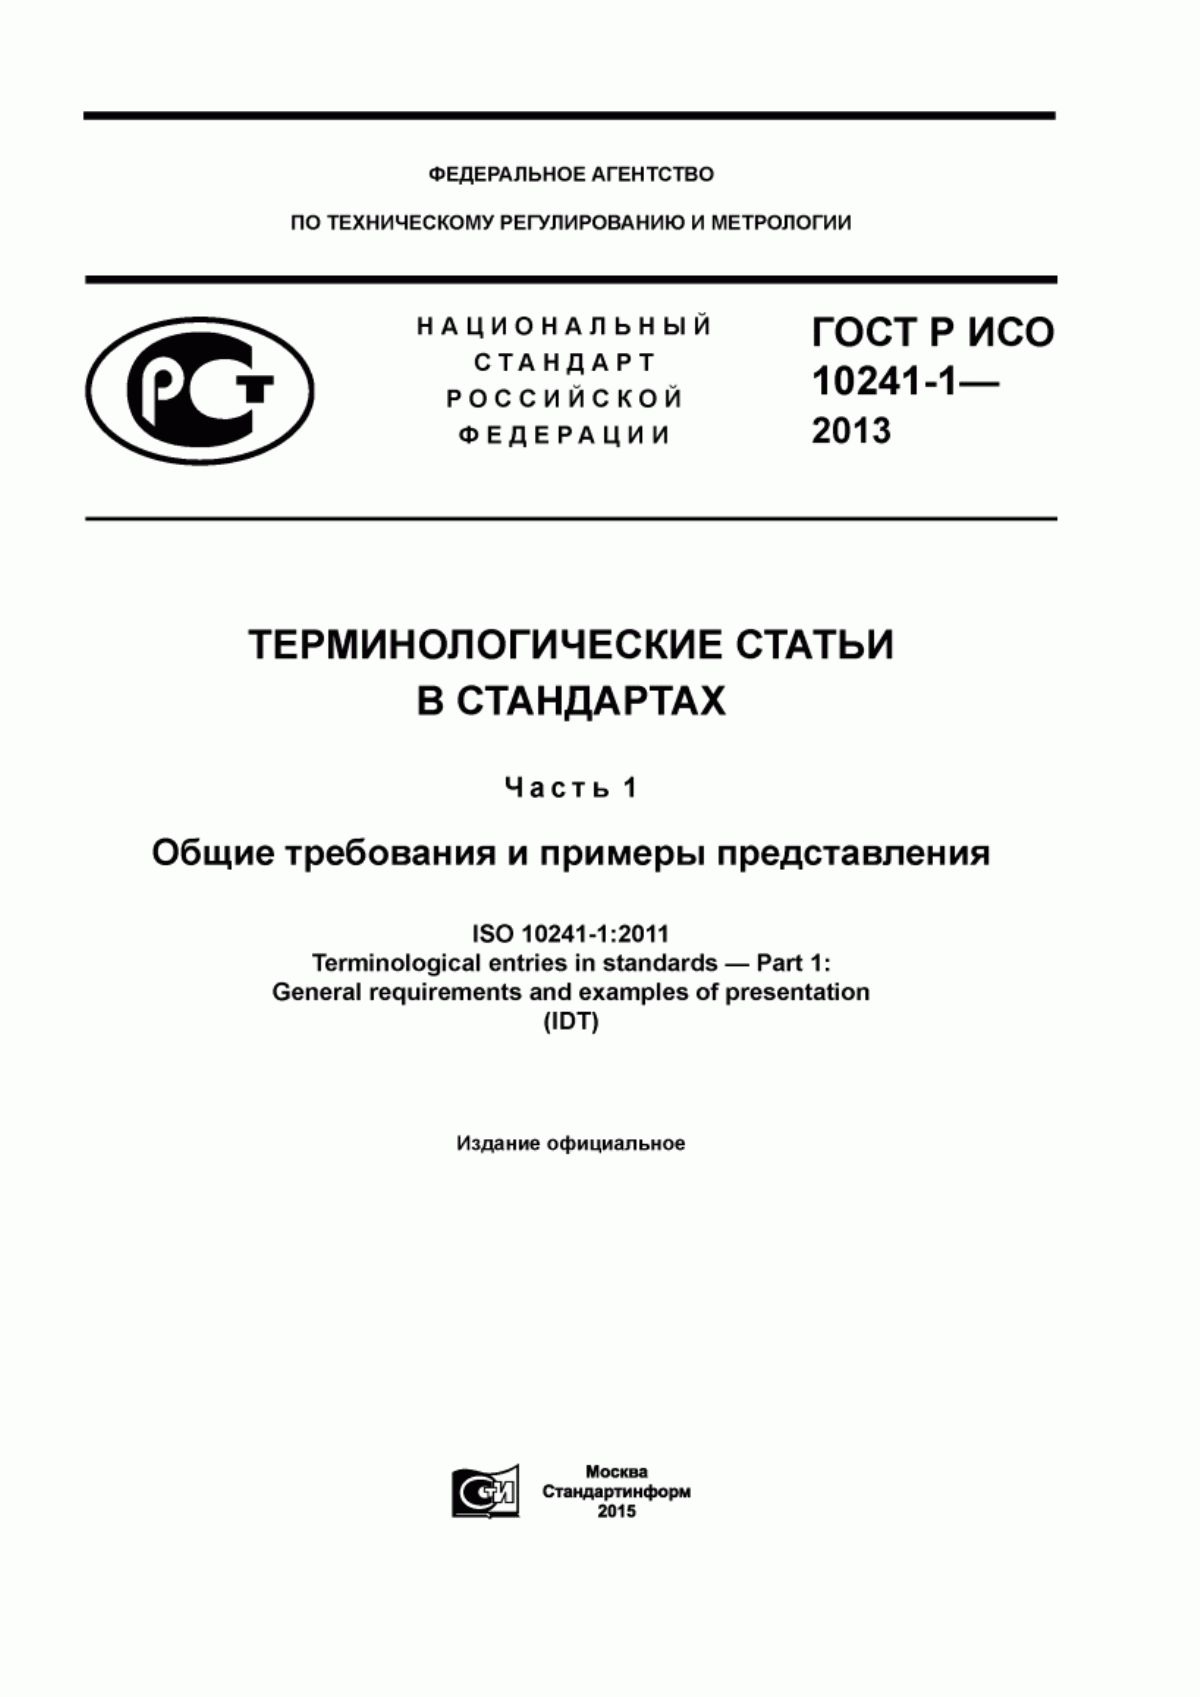 ГОСТ Р ИСО 10241-1-2013 Терминологические статьи в стандартах. Часть 1. Общие требования и примеры представления